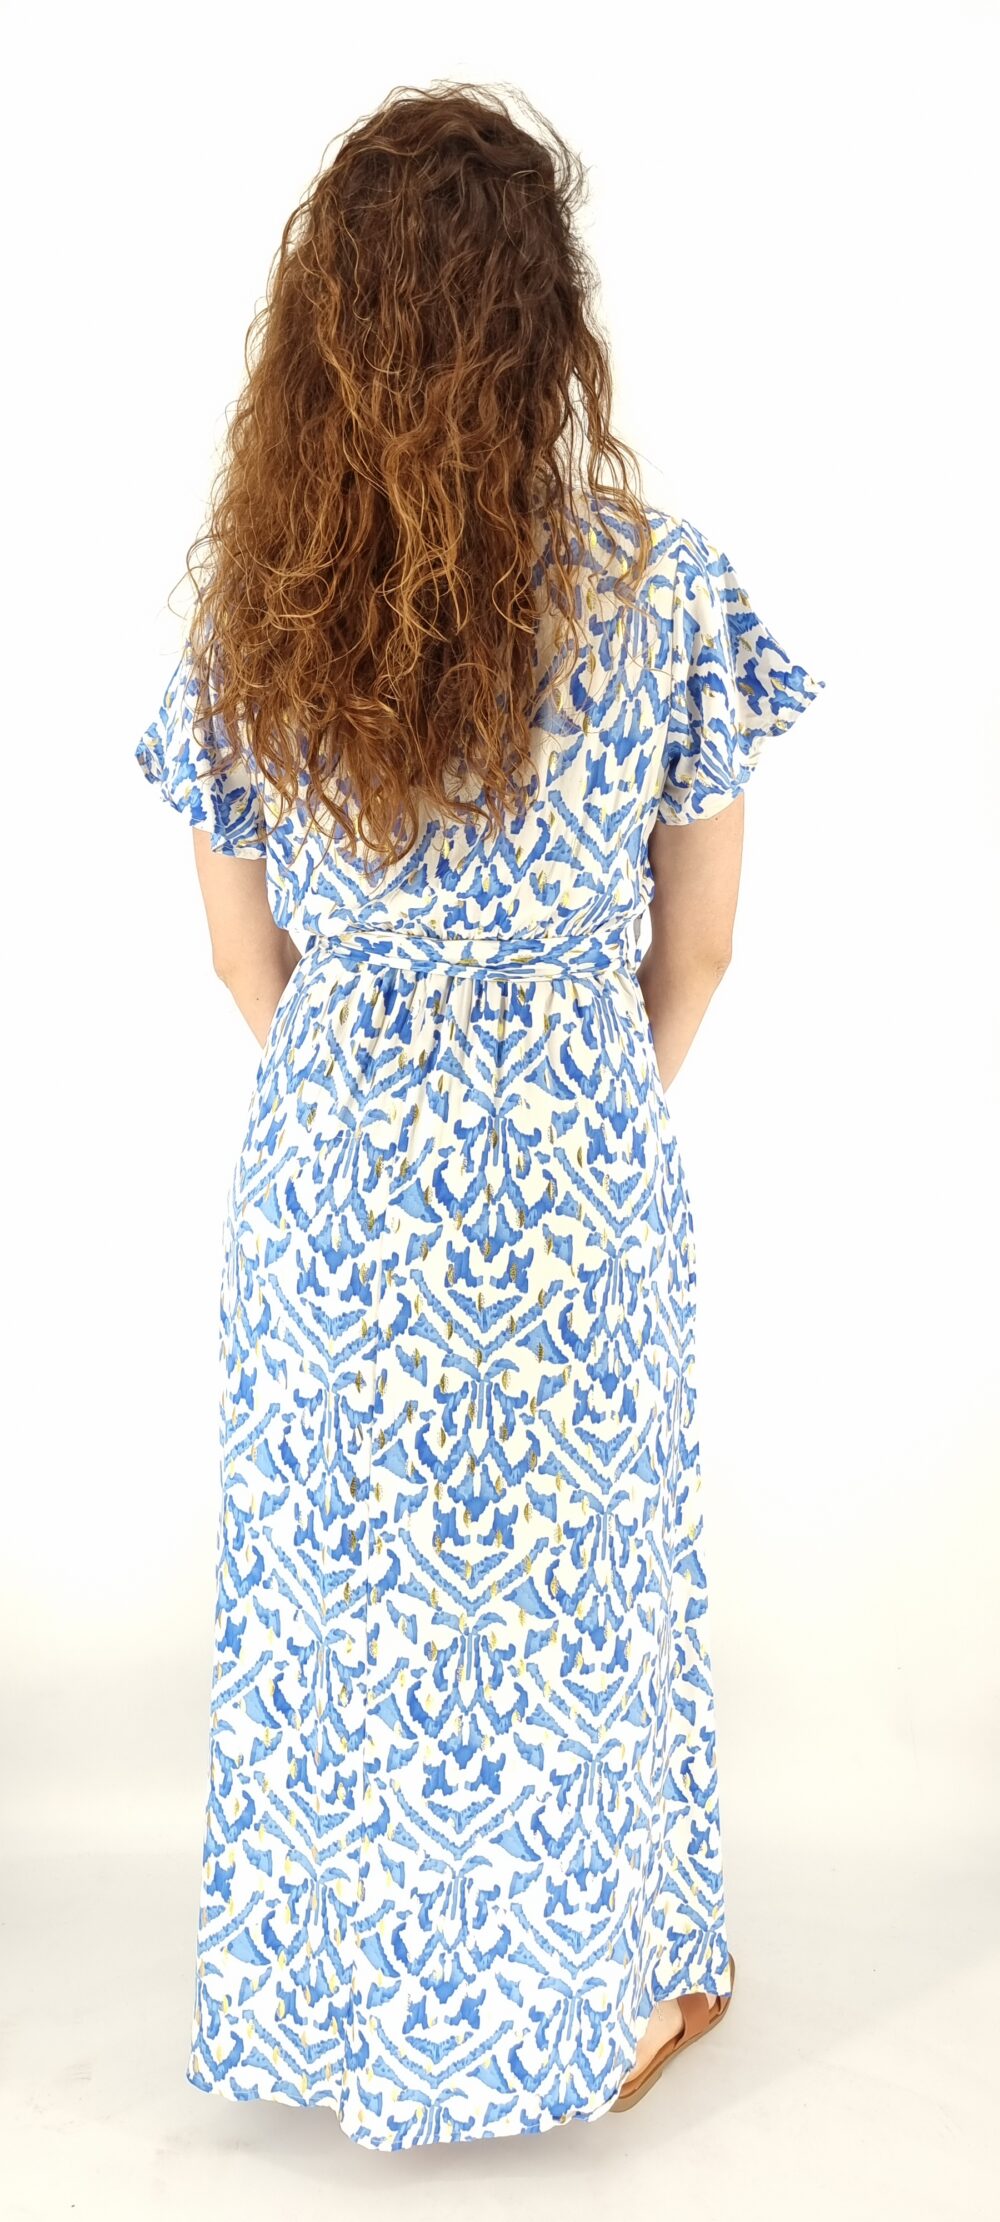 Φόρεμα μακρύ κρουαζέ με ίδια ζώνη και σχέδια μπλε